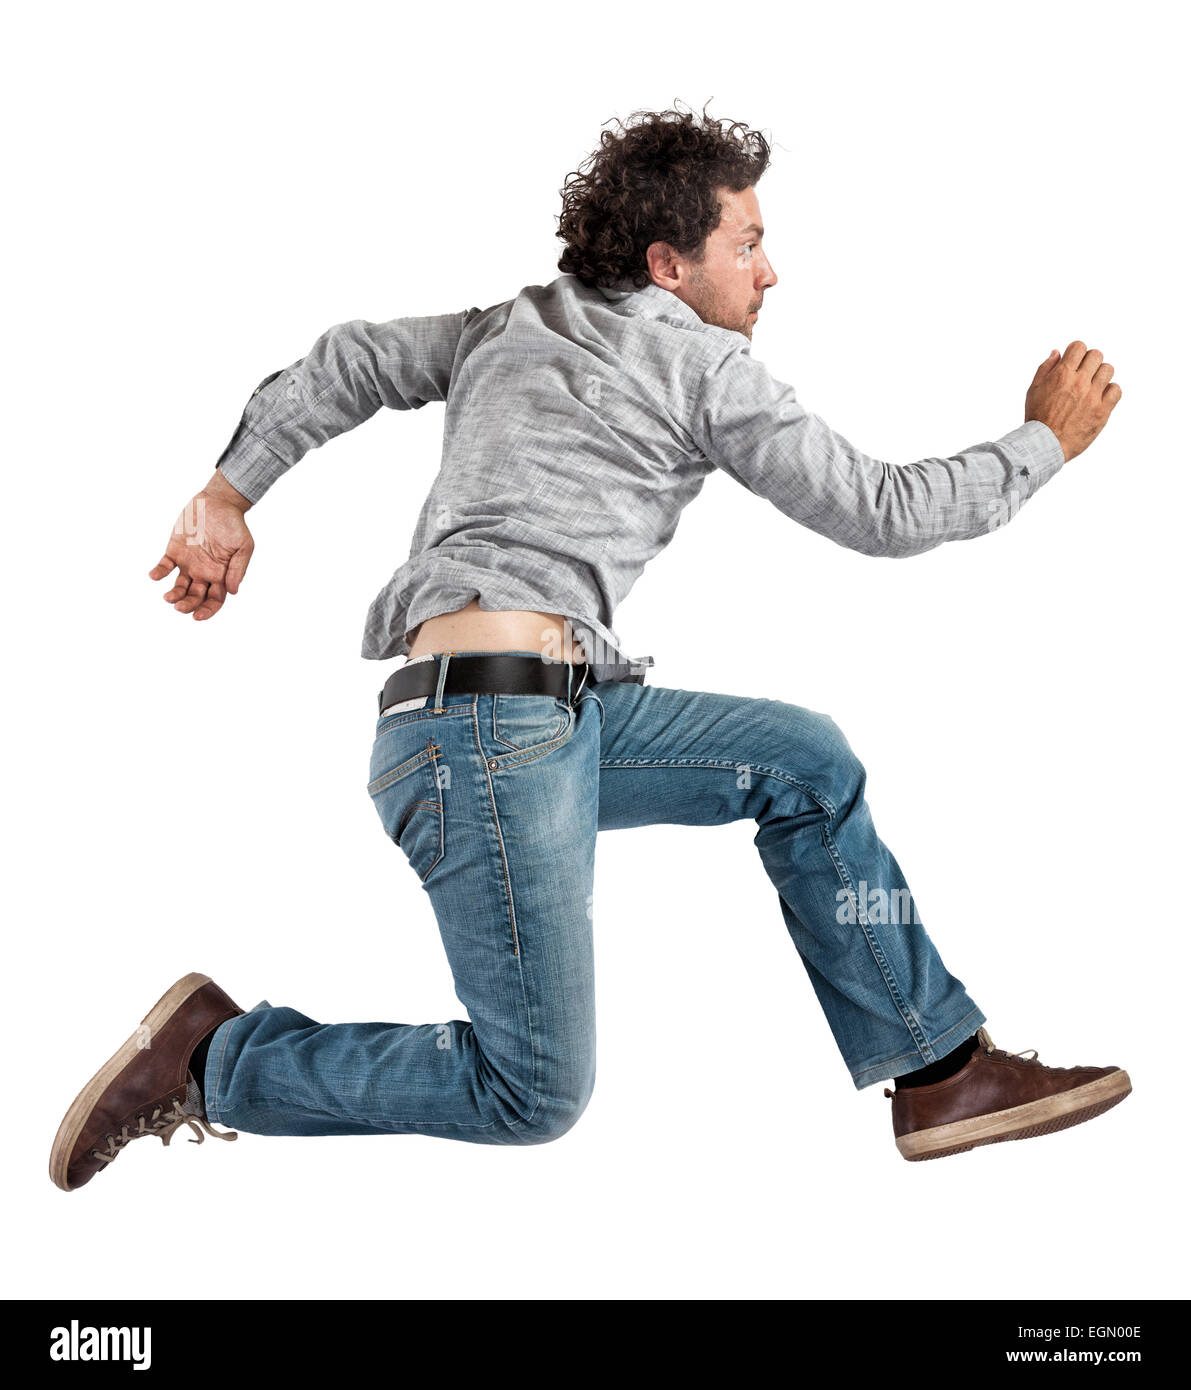 Ritratto di soggetti di razza caucasica jumping uomo isolato su bianco Foto Stock